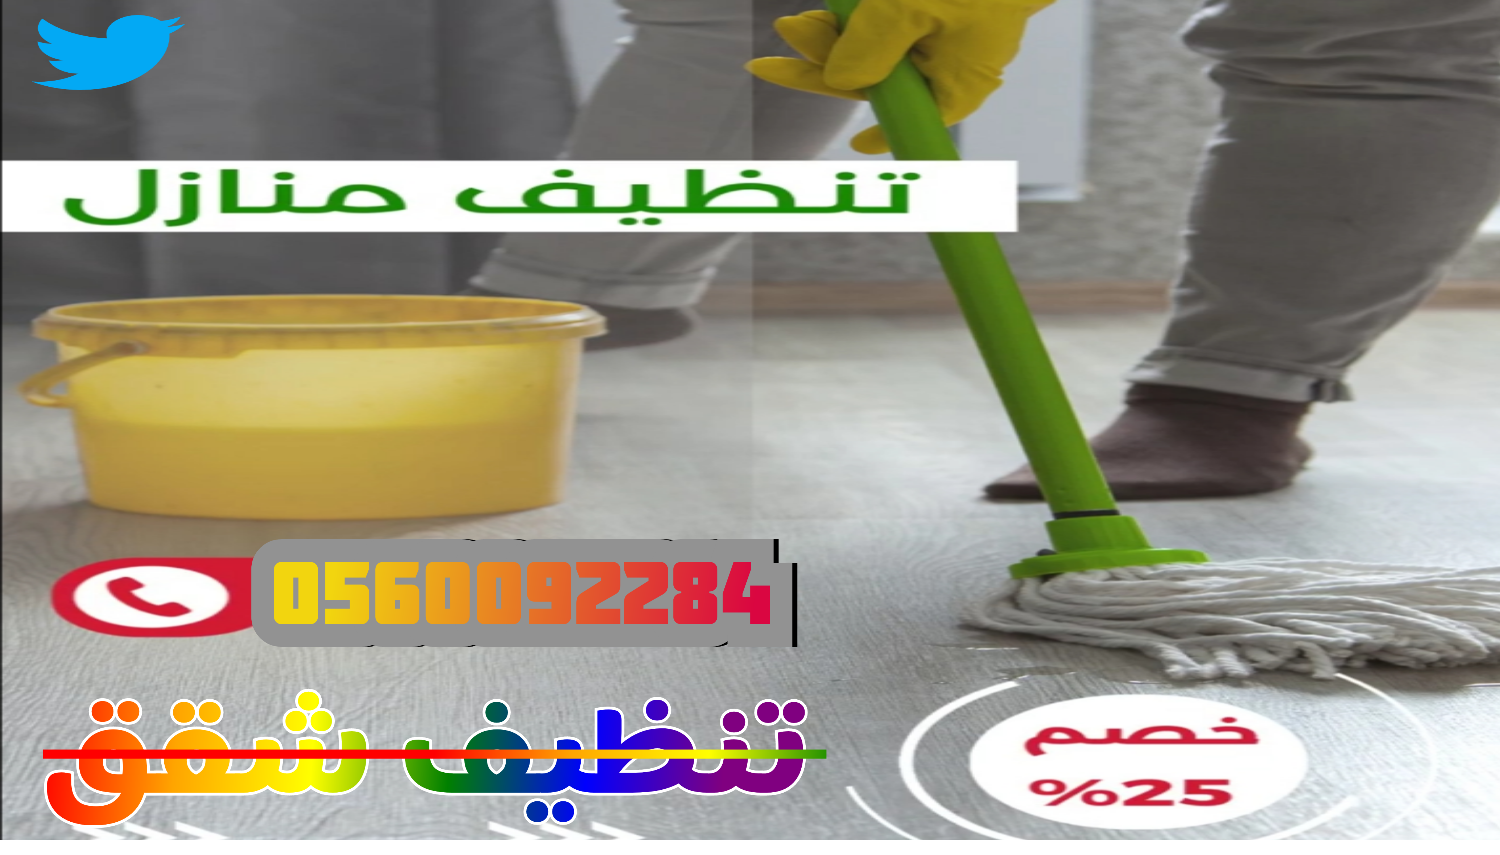 شركة تنظيف خزانات بالمدينة المنورة (٠٥٦٠٠٩٢٢٨٤) الروش لتنظيف وتعقيم الخزانات 